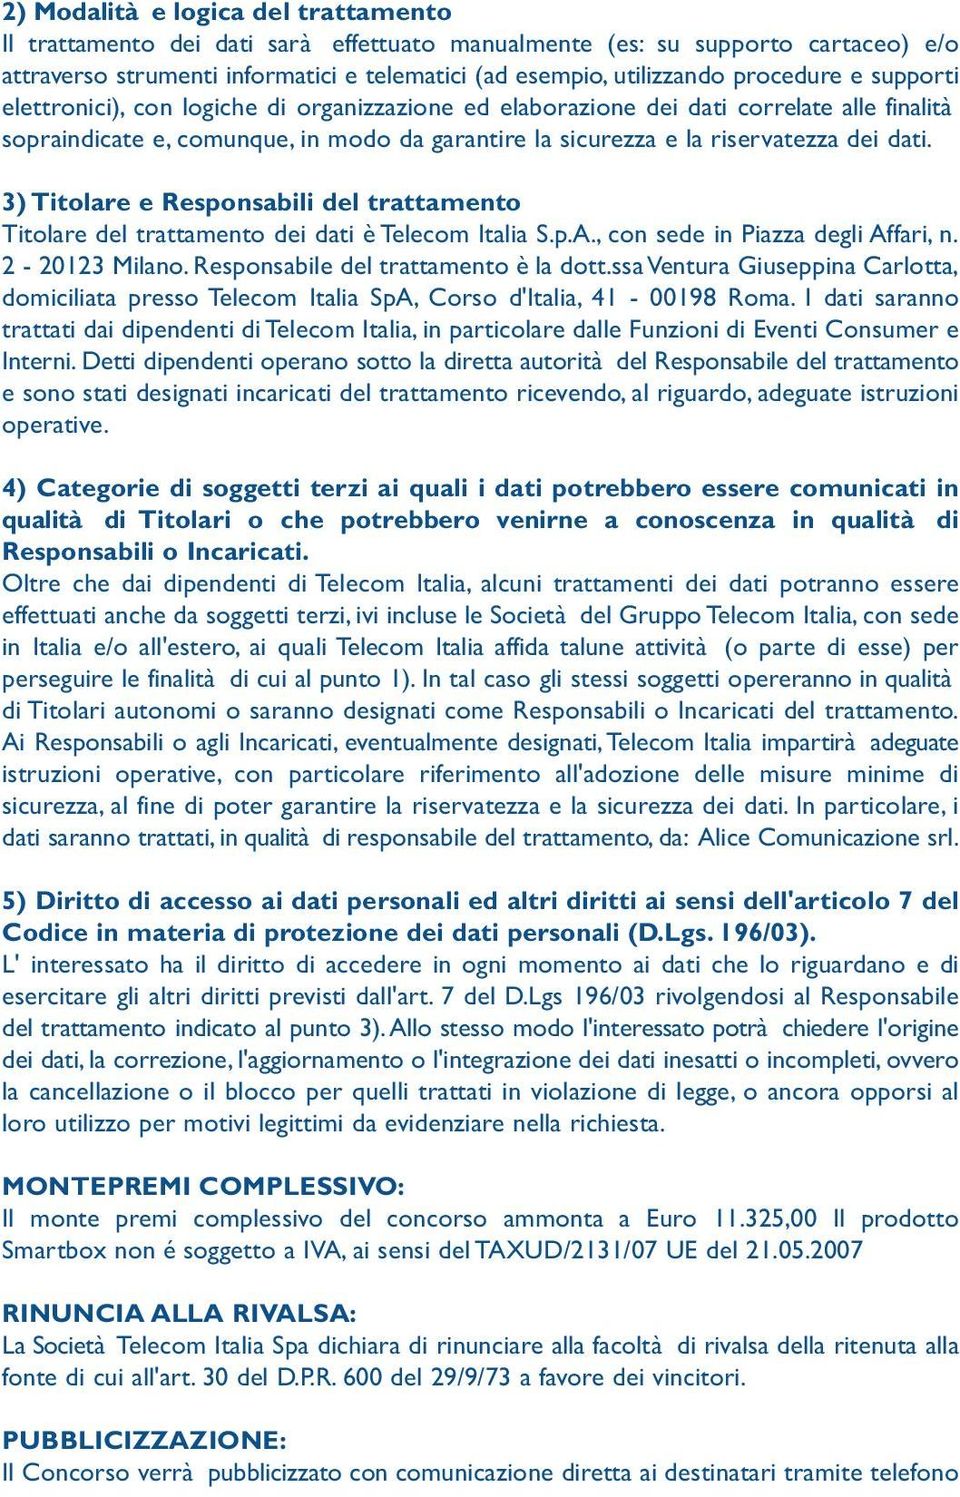 dati. 3) Titolare e Responsabili del trattamento Titolare del trattamento dei dati è Telecom Italia S.p.A., con sede in Piazza degli Affari, n. 2-20123 Milano. Responsabile del trattamento è la dott.